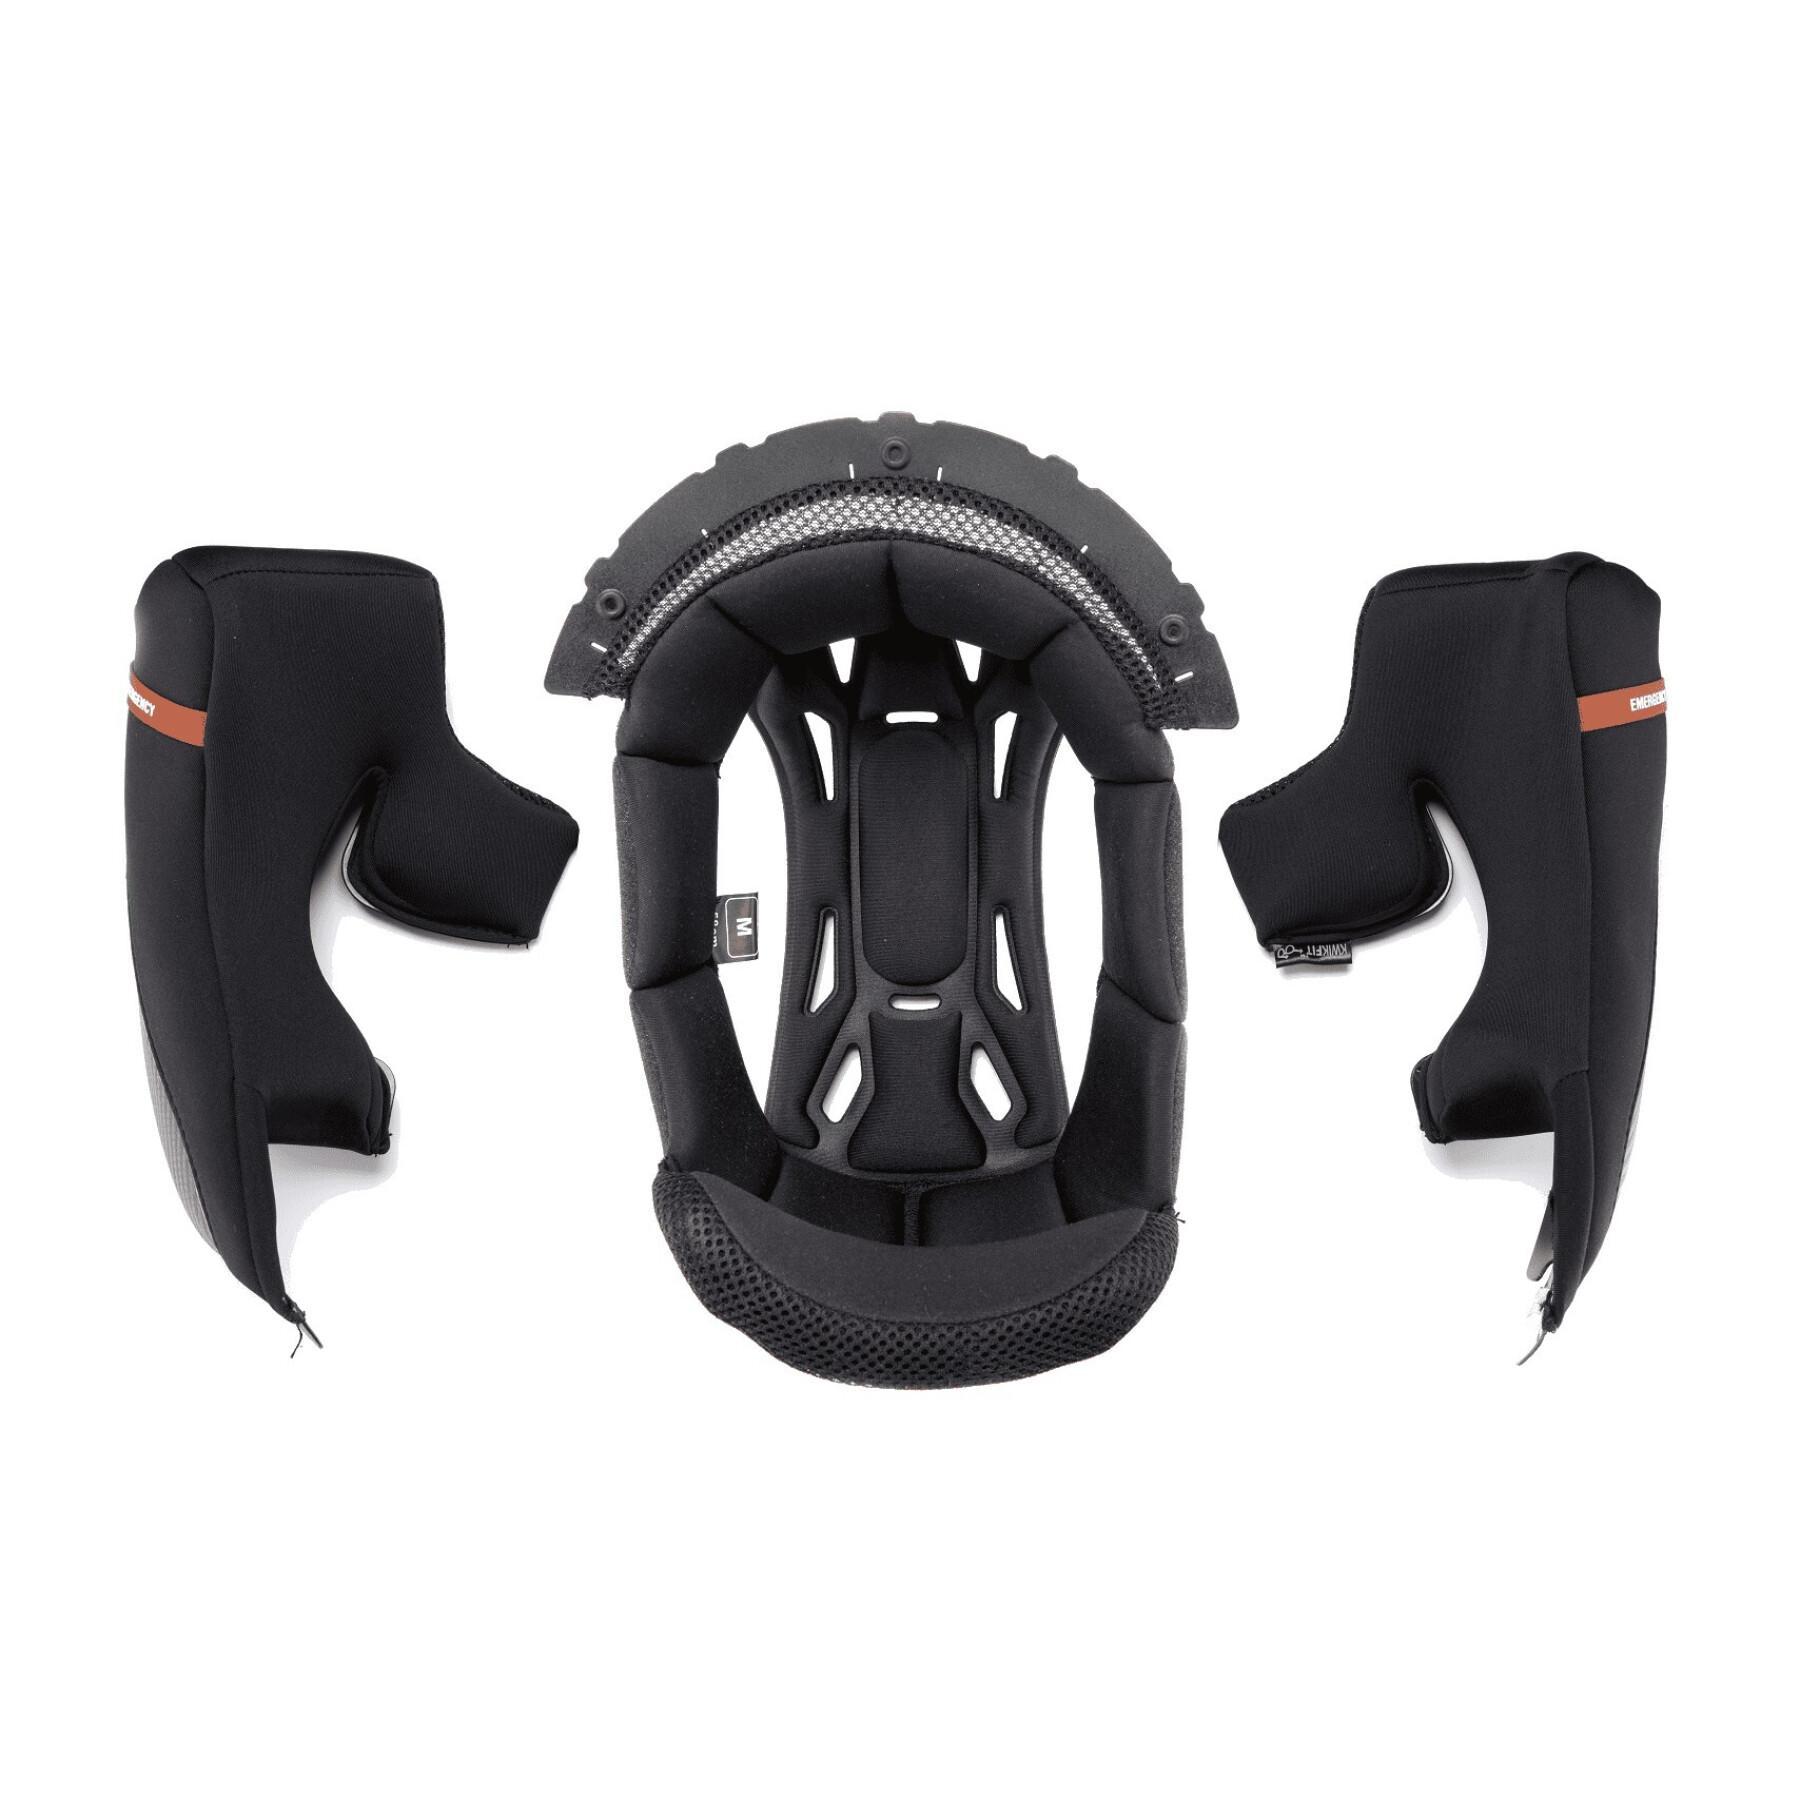 Standard motorcycle helmet foam Scorpion EXO-COMBAT KW